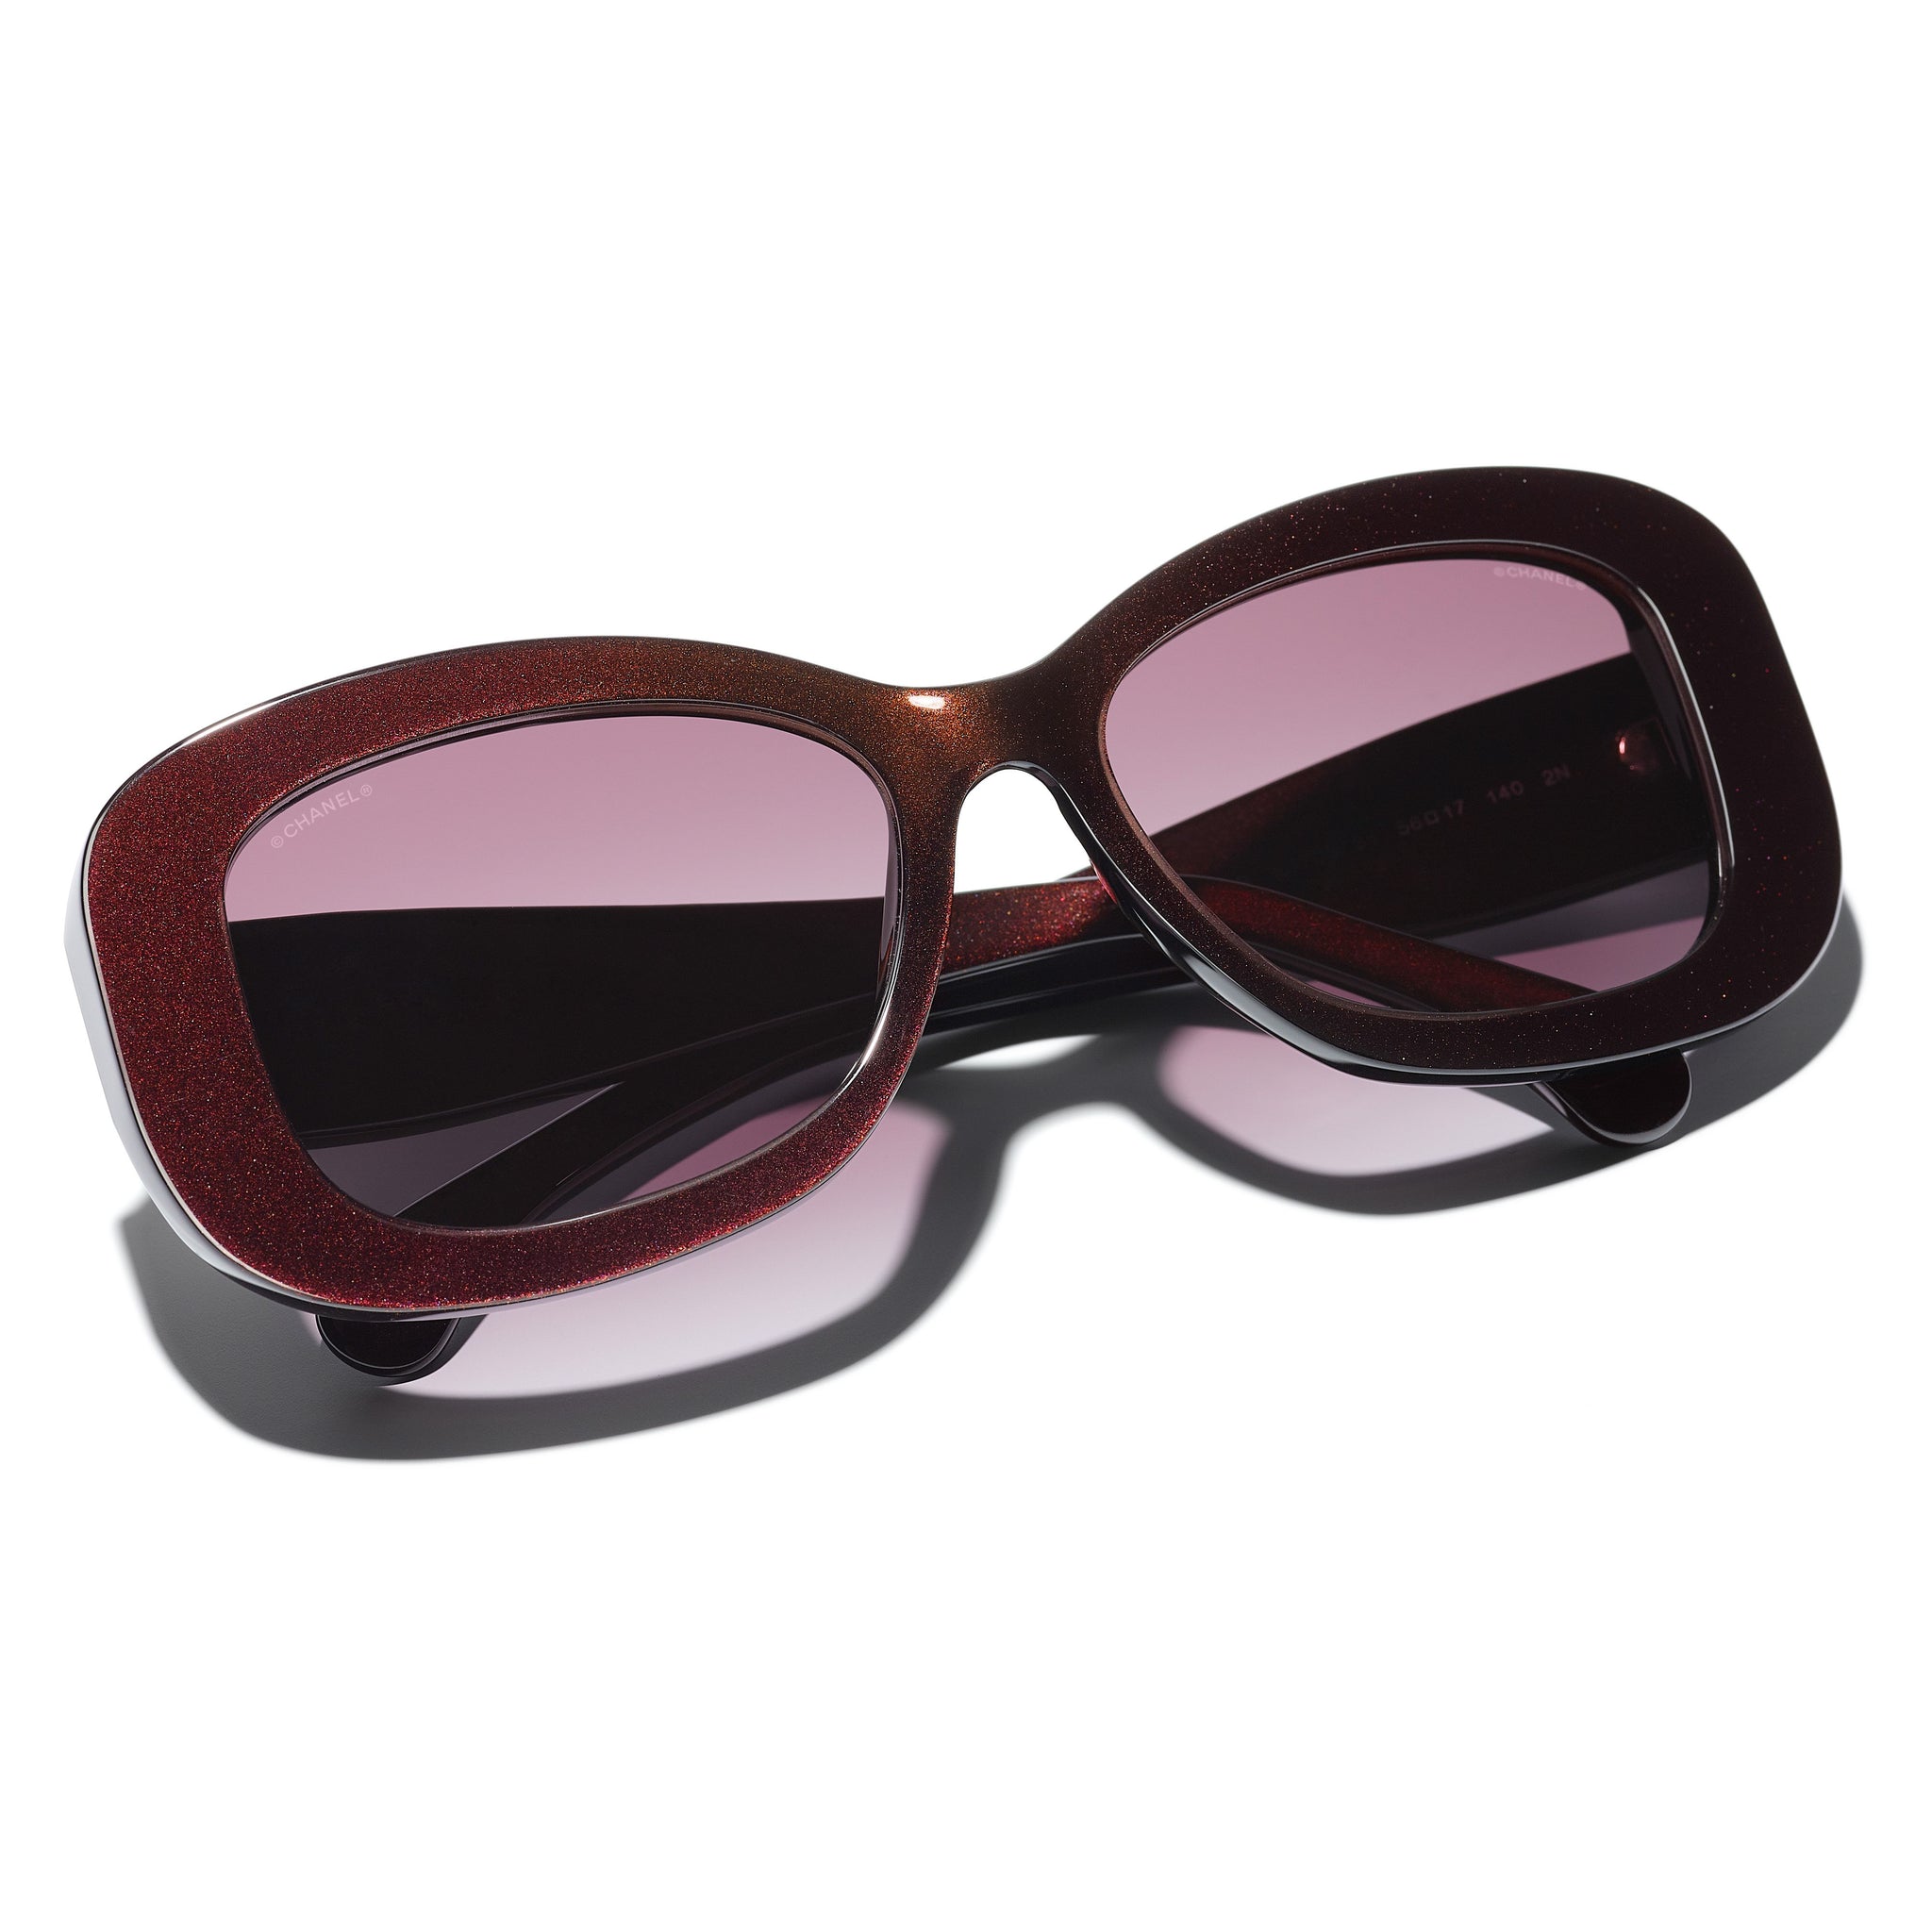 Chanel 5468B C888/S6 Sunglasses - US